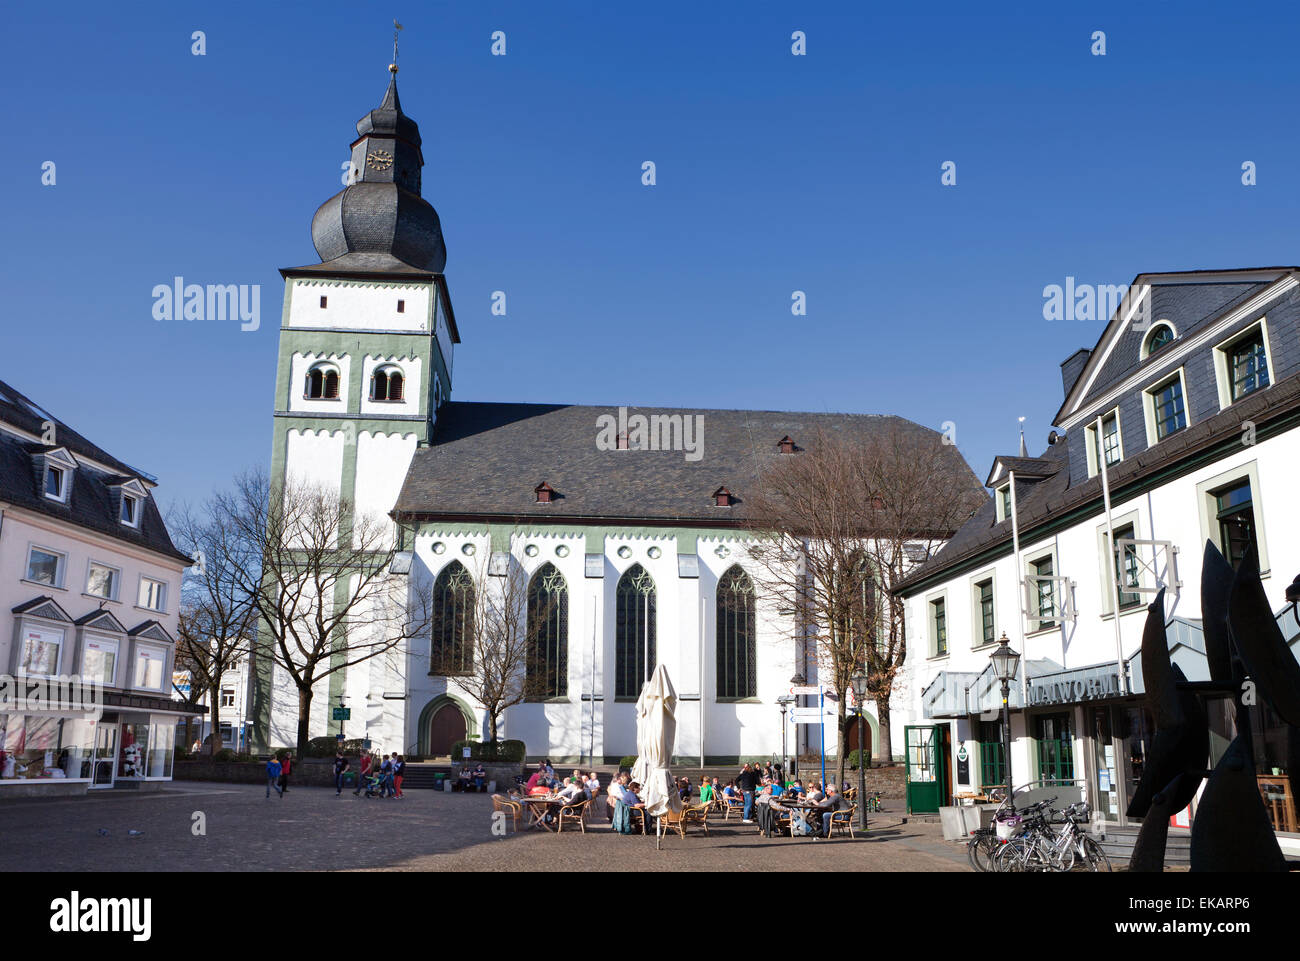 Pfarrkirche am alten Markt Platz, hanseatische Stadt Attendorn, Region Sauerland, Nordrhein-Westfalen, Deutschland, Europa, Stockfoto